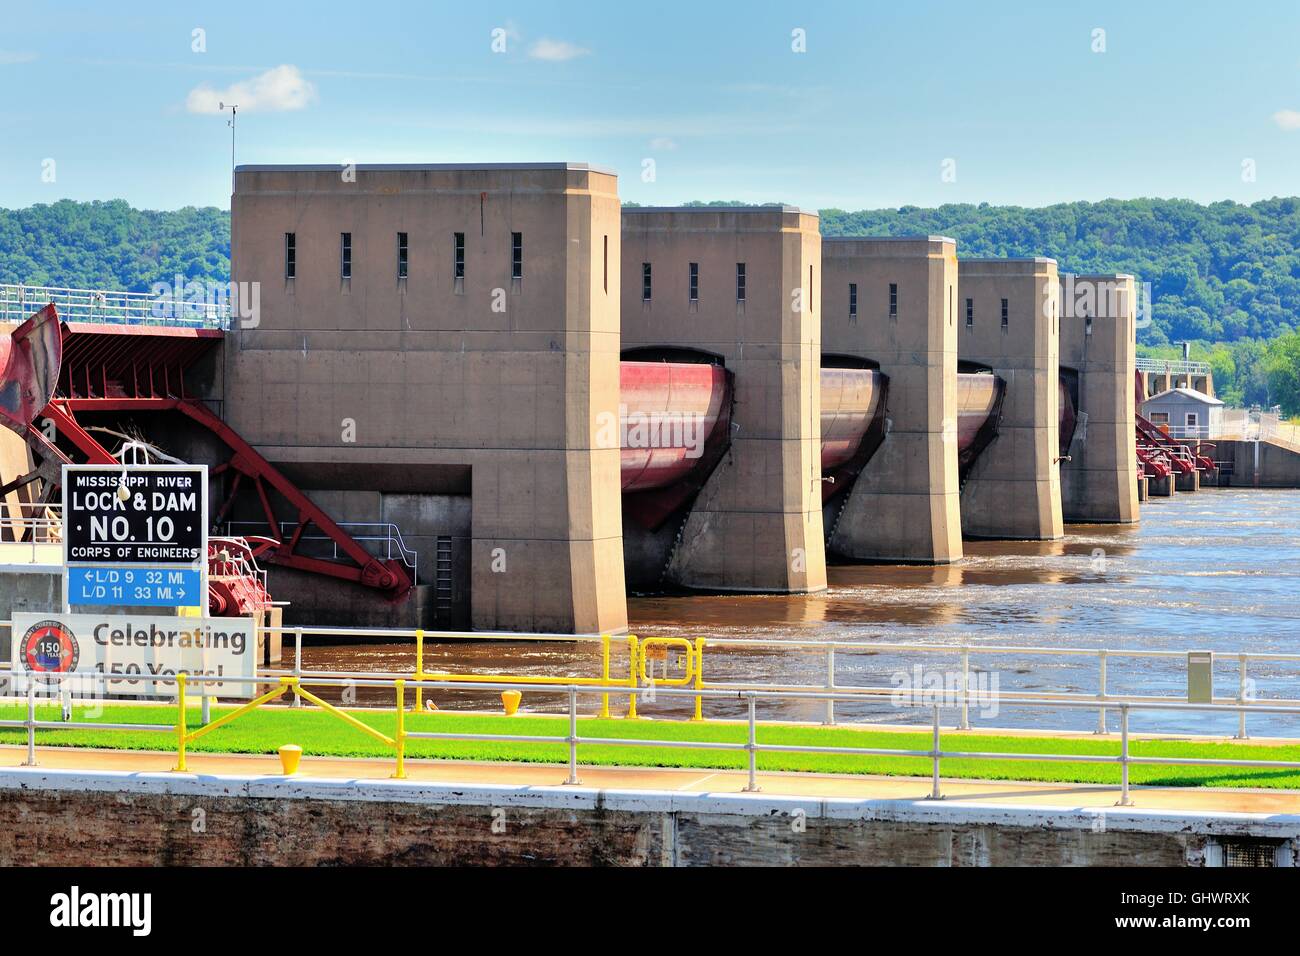 No10 Écluse et barrage sur la rivière Mississippi, à Guttenberg, Iowa construit par l'US Army Corps of Engineers. Guttenberg, Iowa, États-Unis. Banque D'Images